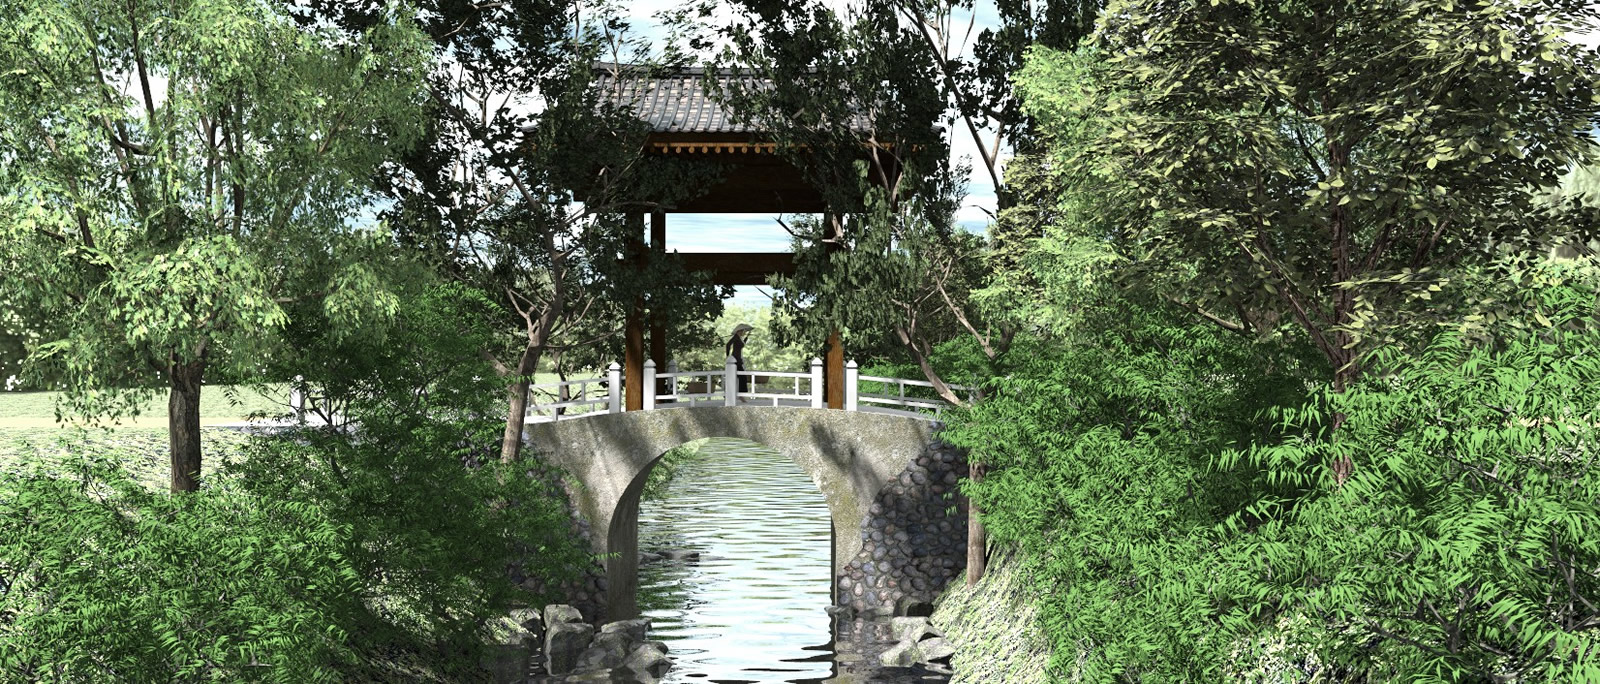 Korean country bridge render.jpg